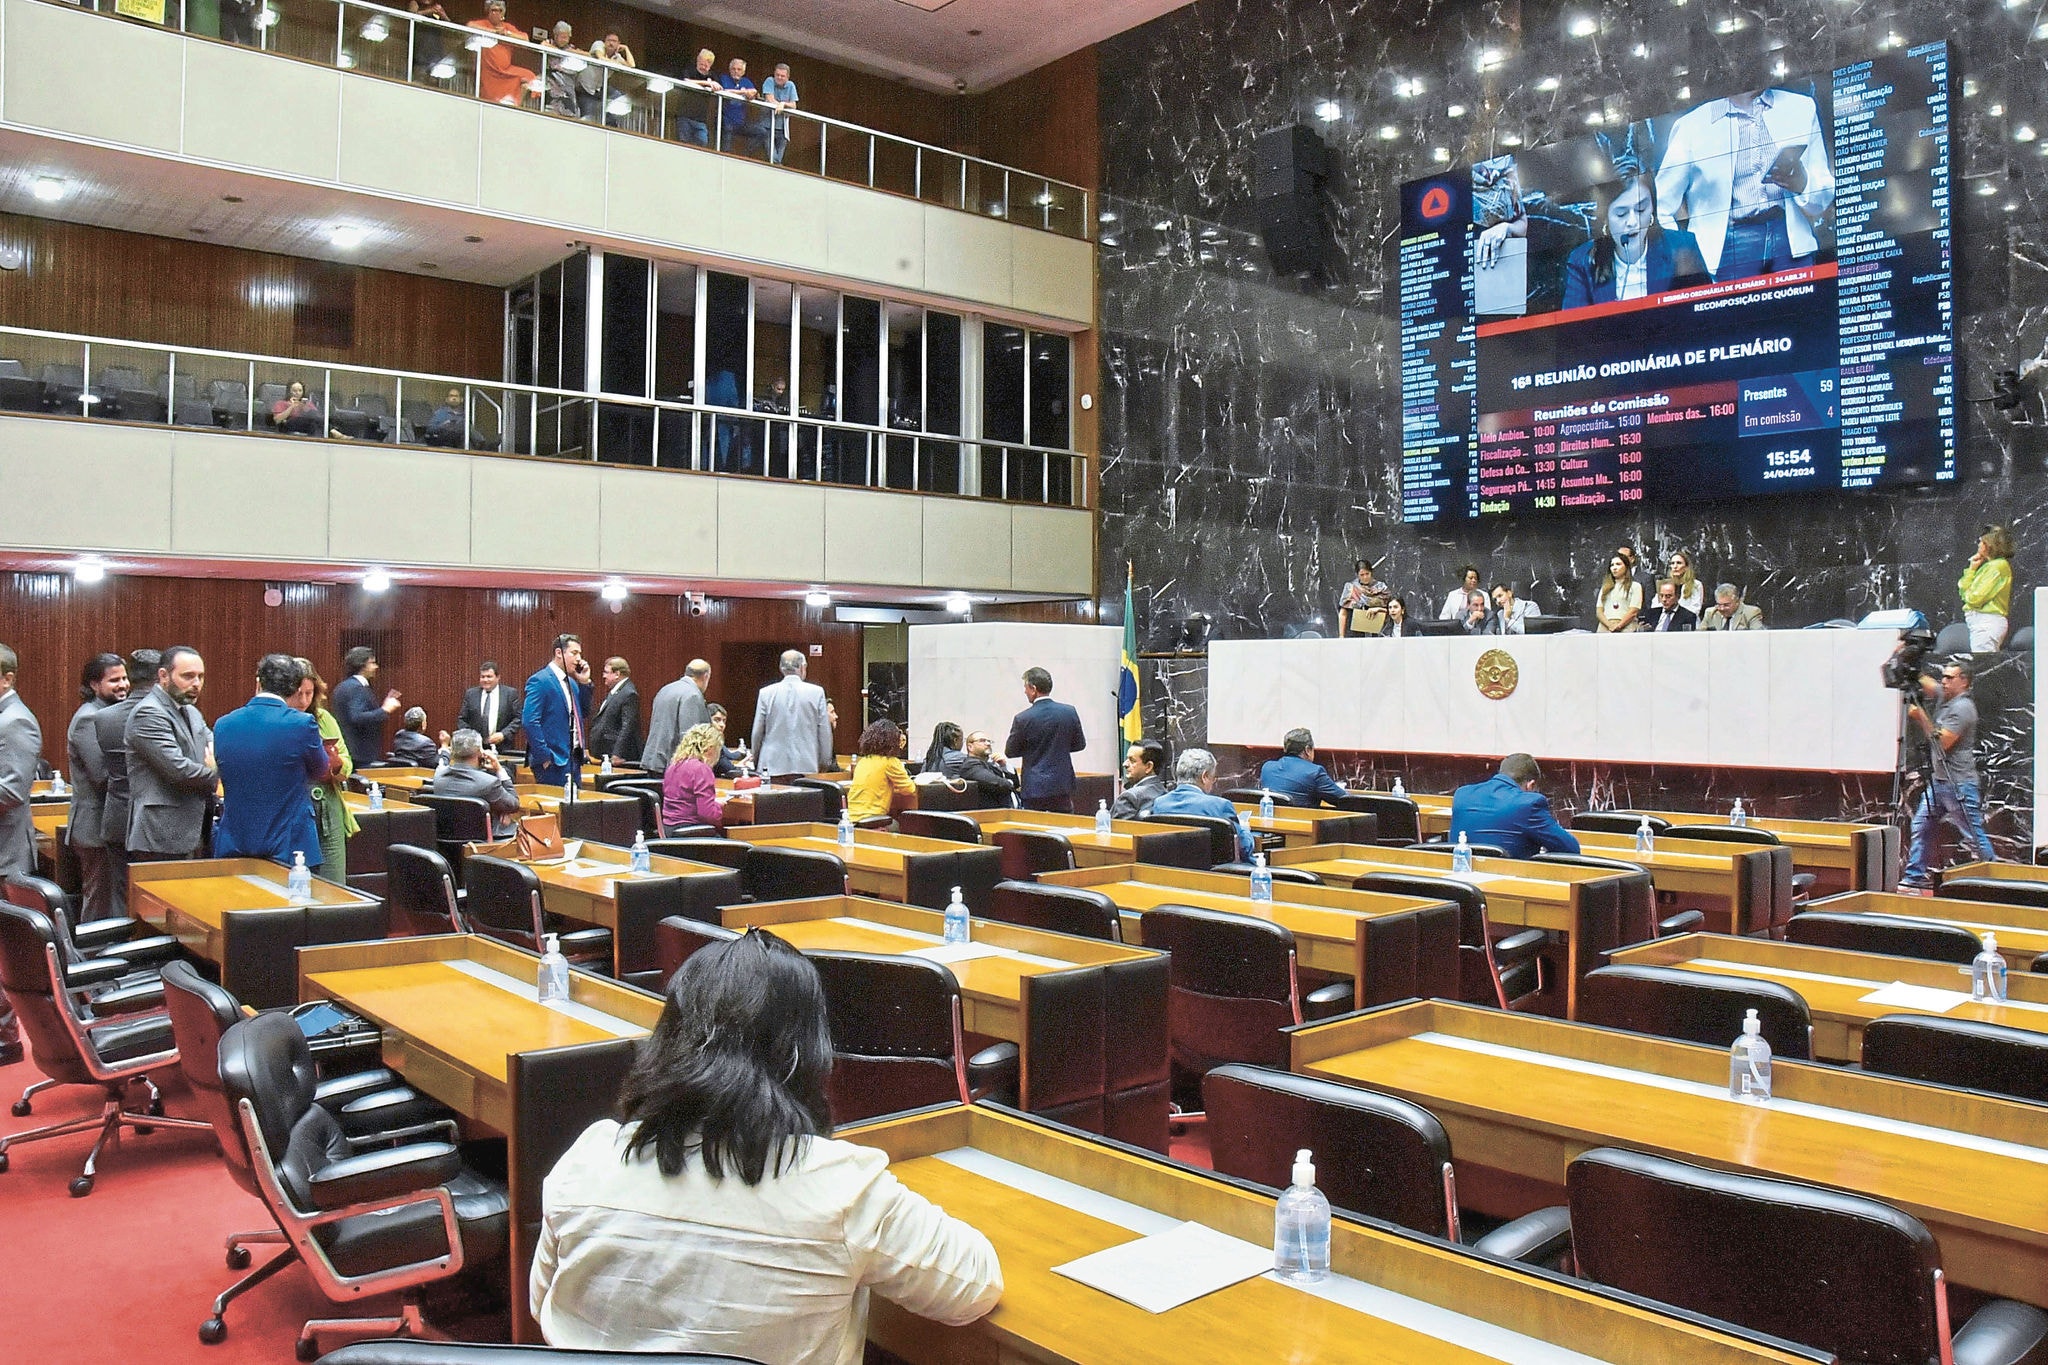 Governo de Minas propõe reajuste de 3,62% para o funcionalismo; na foto, plenário da Assembleia Legislativa
